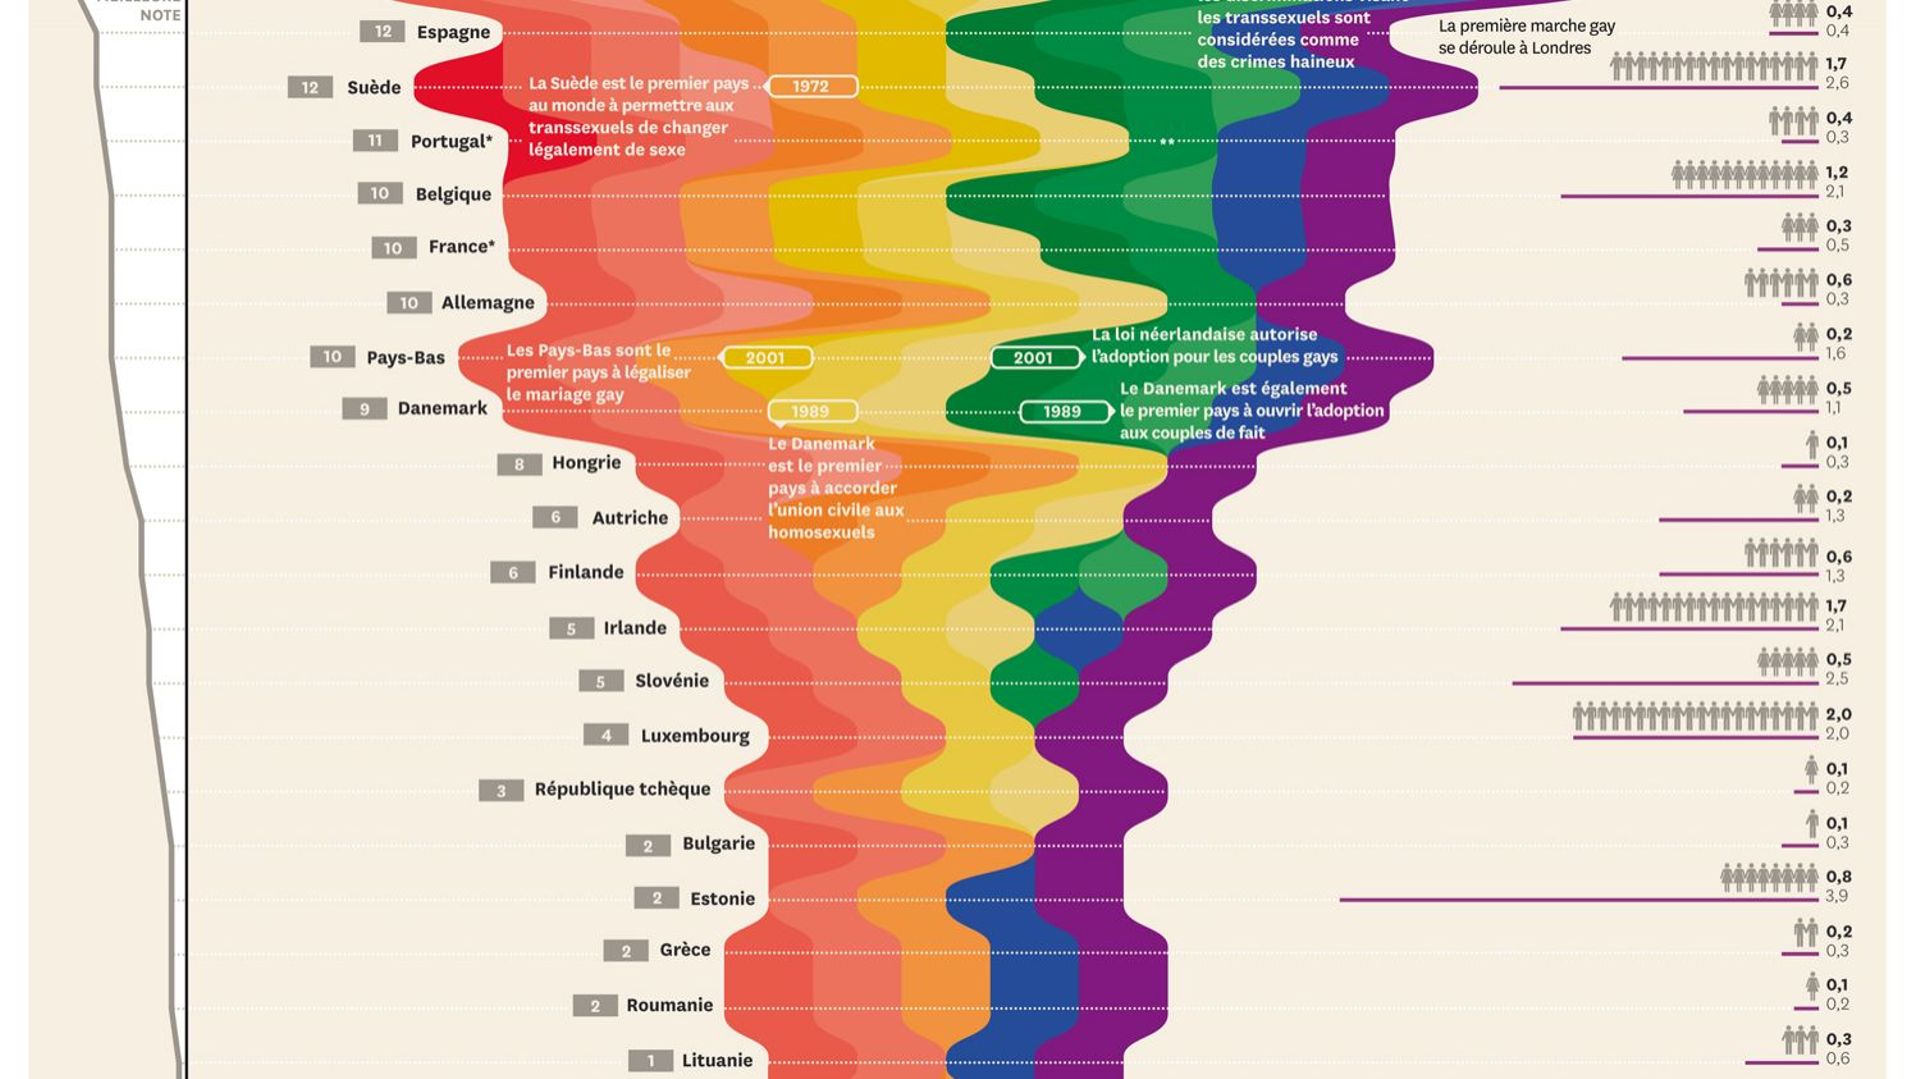 infographie-quel-pays-europeen-est-le-plus-gay-friendly